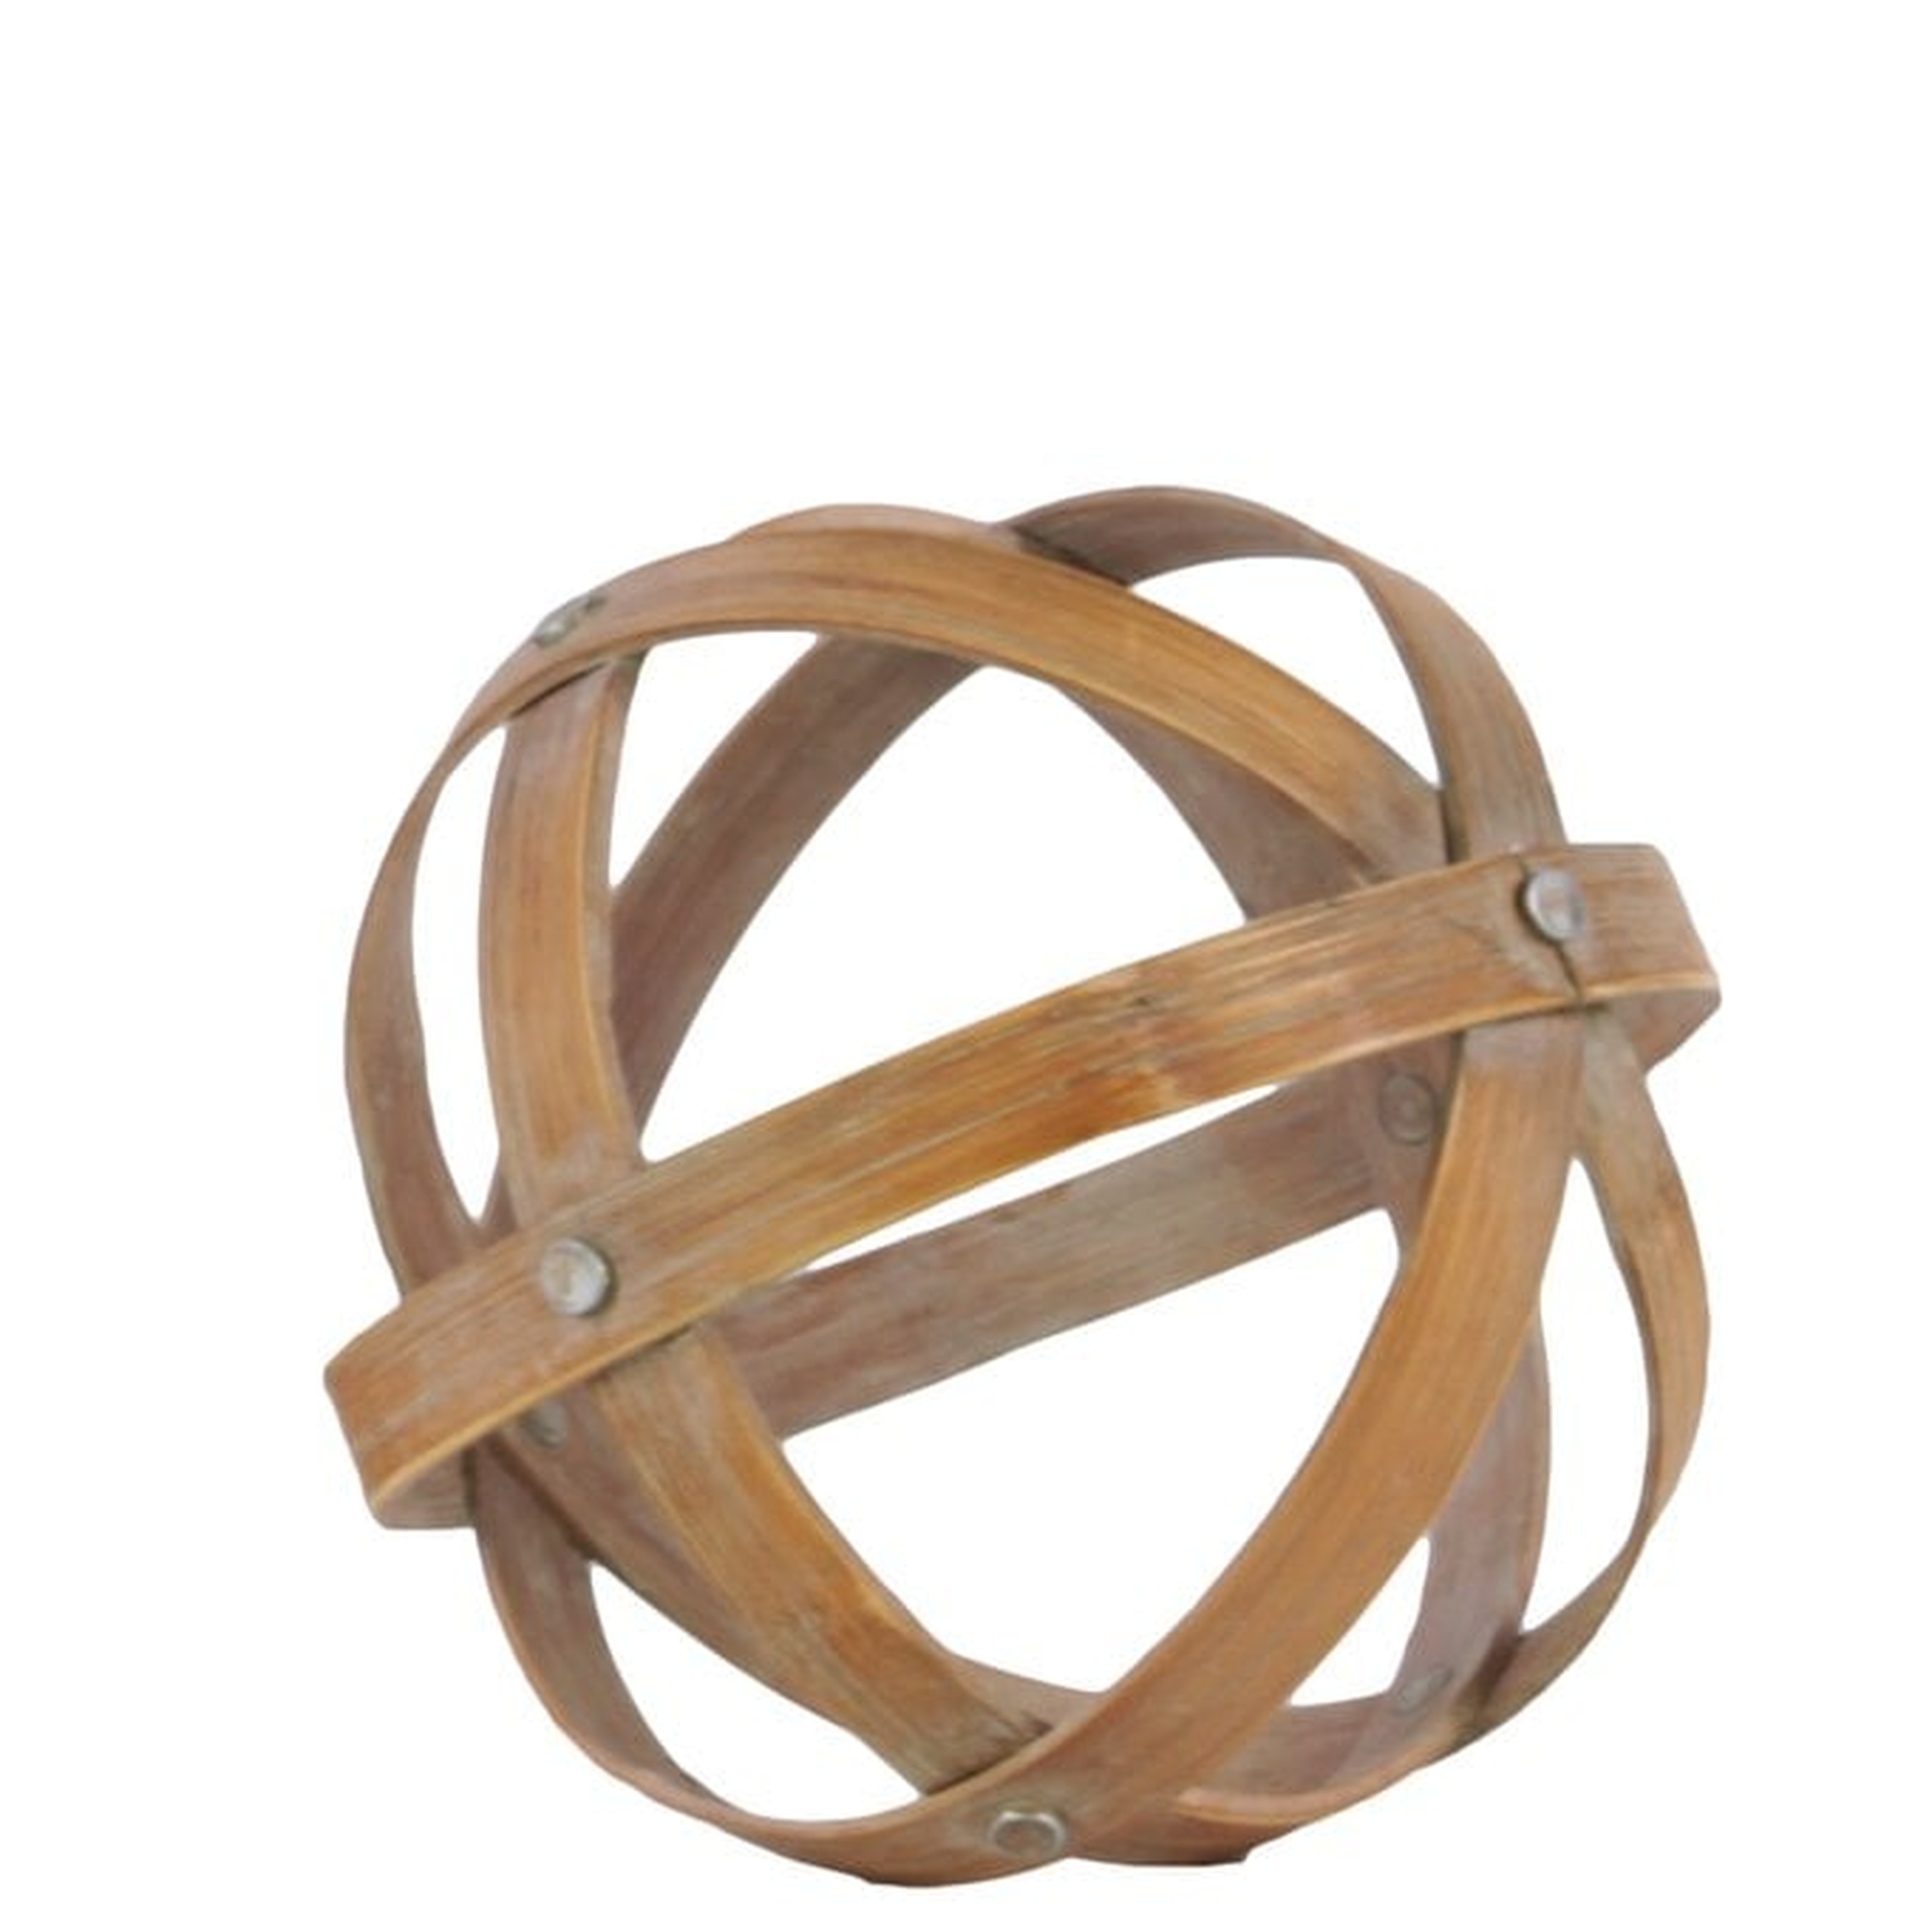 Batts Bamboo Orb Dyson Sphere Sculpture - Wayfair